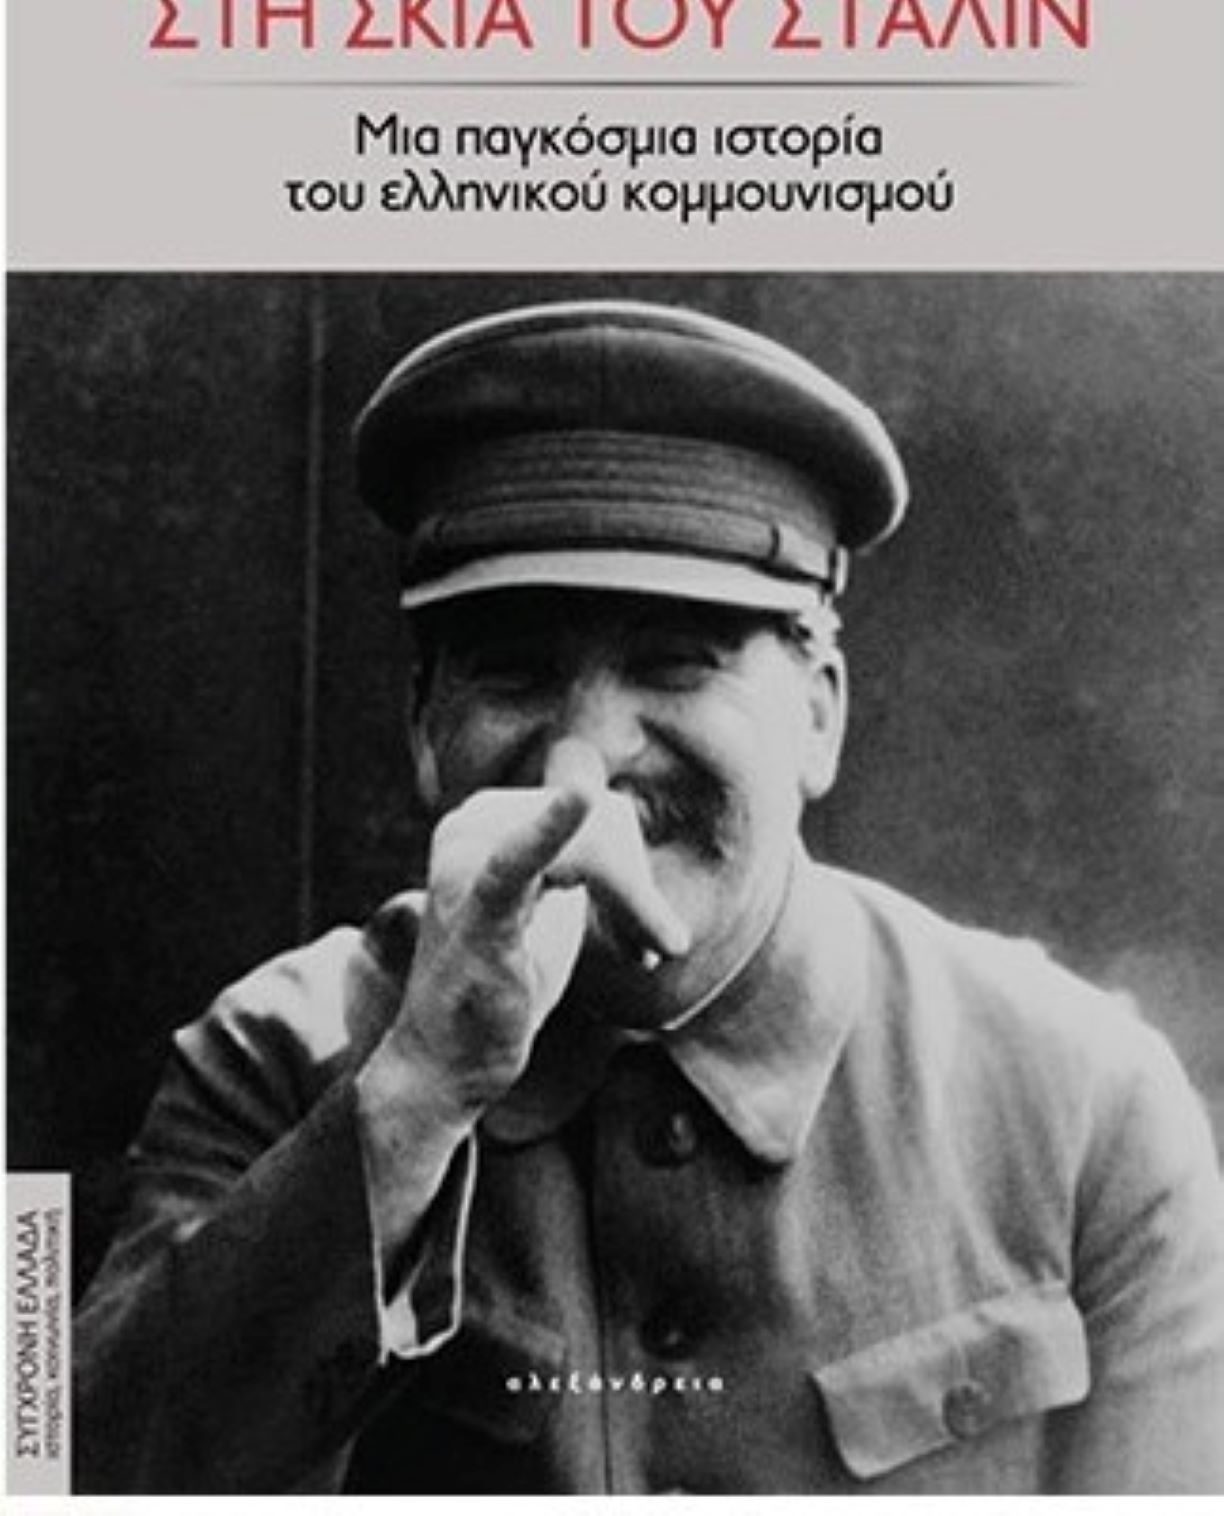 “Στη σκιά του Στάλιν” στη Λογοτεχνική Γωνία Λάρισας